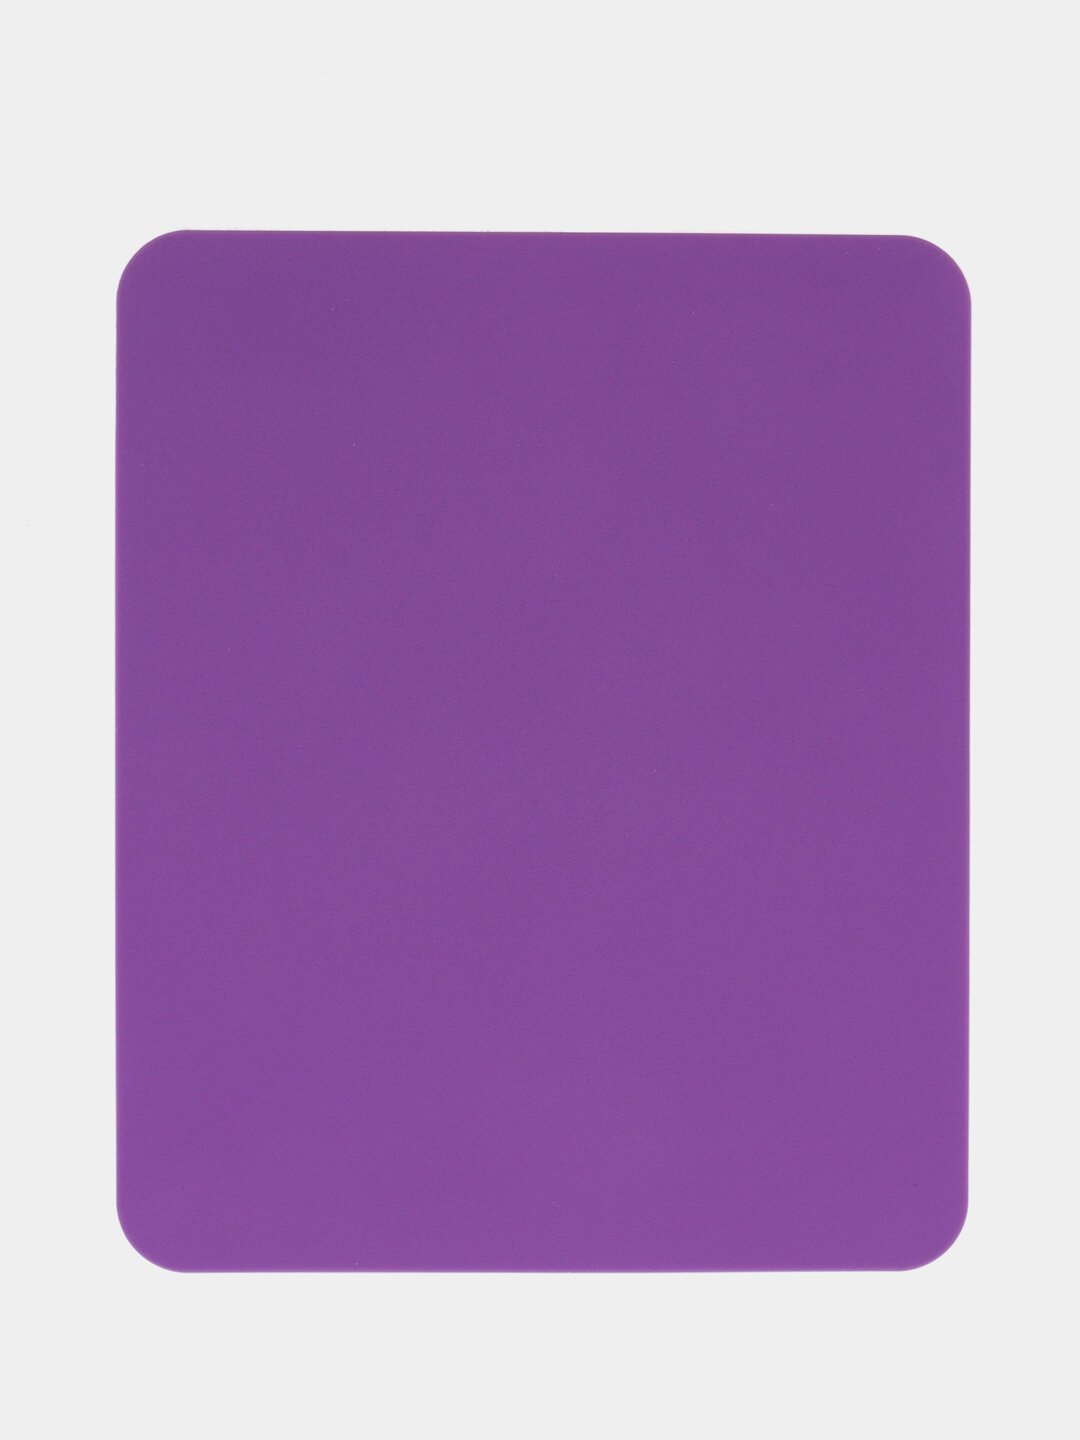 Коврик для мыши силиконовый, Цвет Фиолетовый